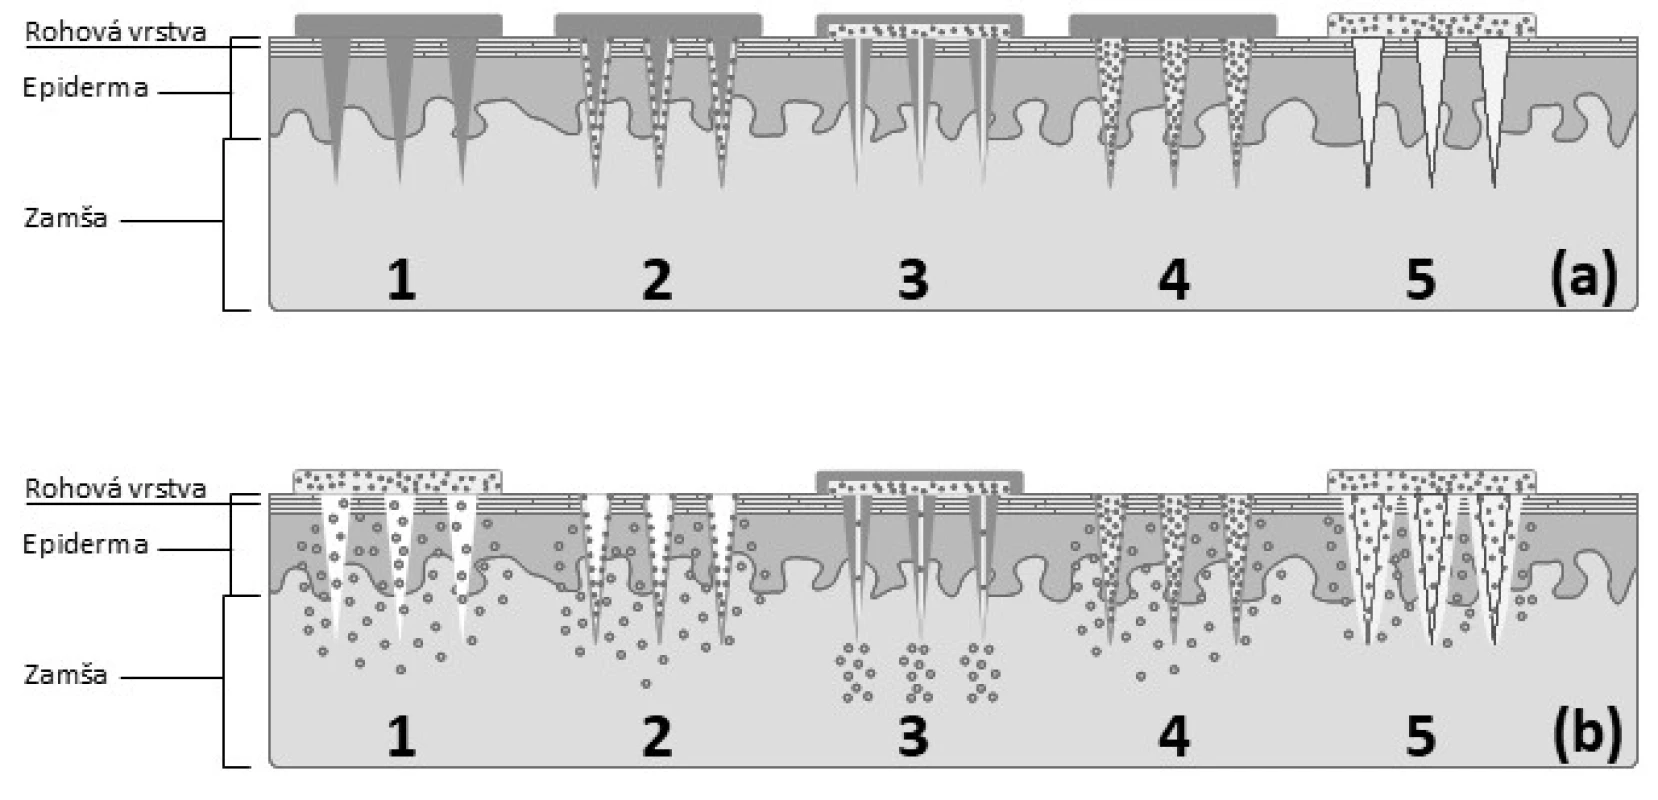 Schematické znázornenie jednotlivých typov zoskupení MI a mechanizmu prieniku
liečiva do zamše: aplikácia jednotlivých typov MI (a), permeácia liečiva cez prepichnutú
pokožku(b)
1 – pevné MI, 2 – vrstvené MI, 3 – duté MI, 4 – matricová MI, 5 – hydrogélové MI
(spracované podľa<sup>41)</sup>)